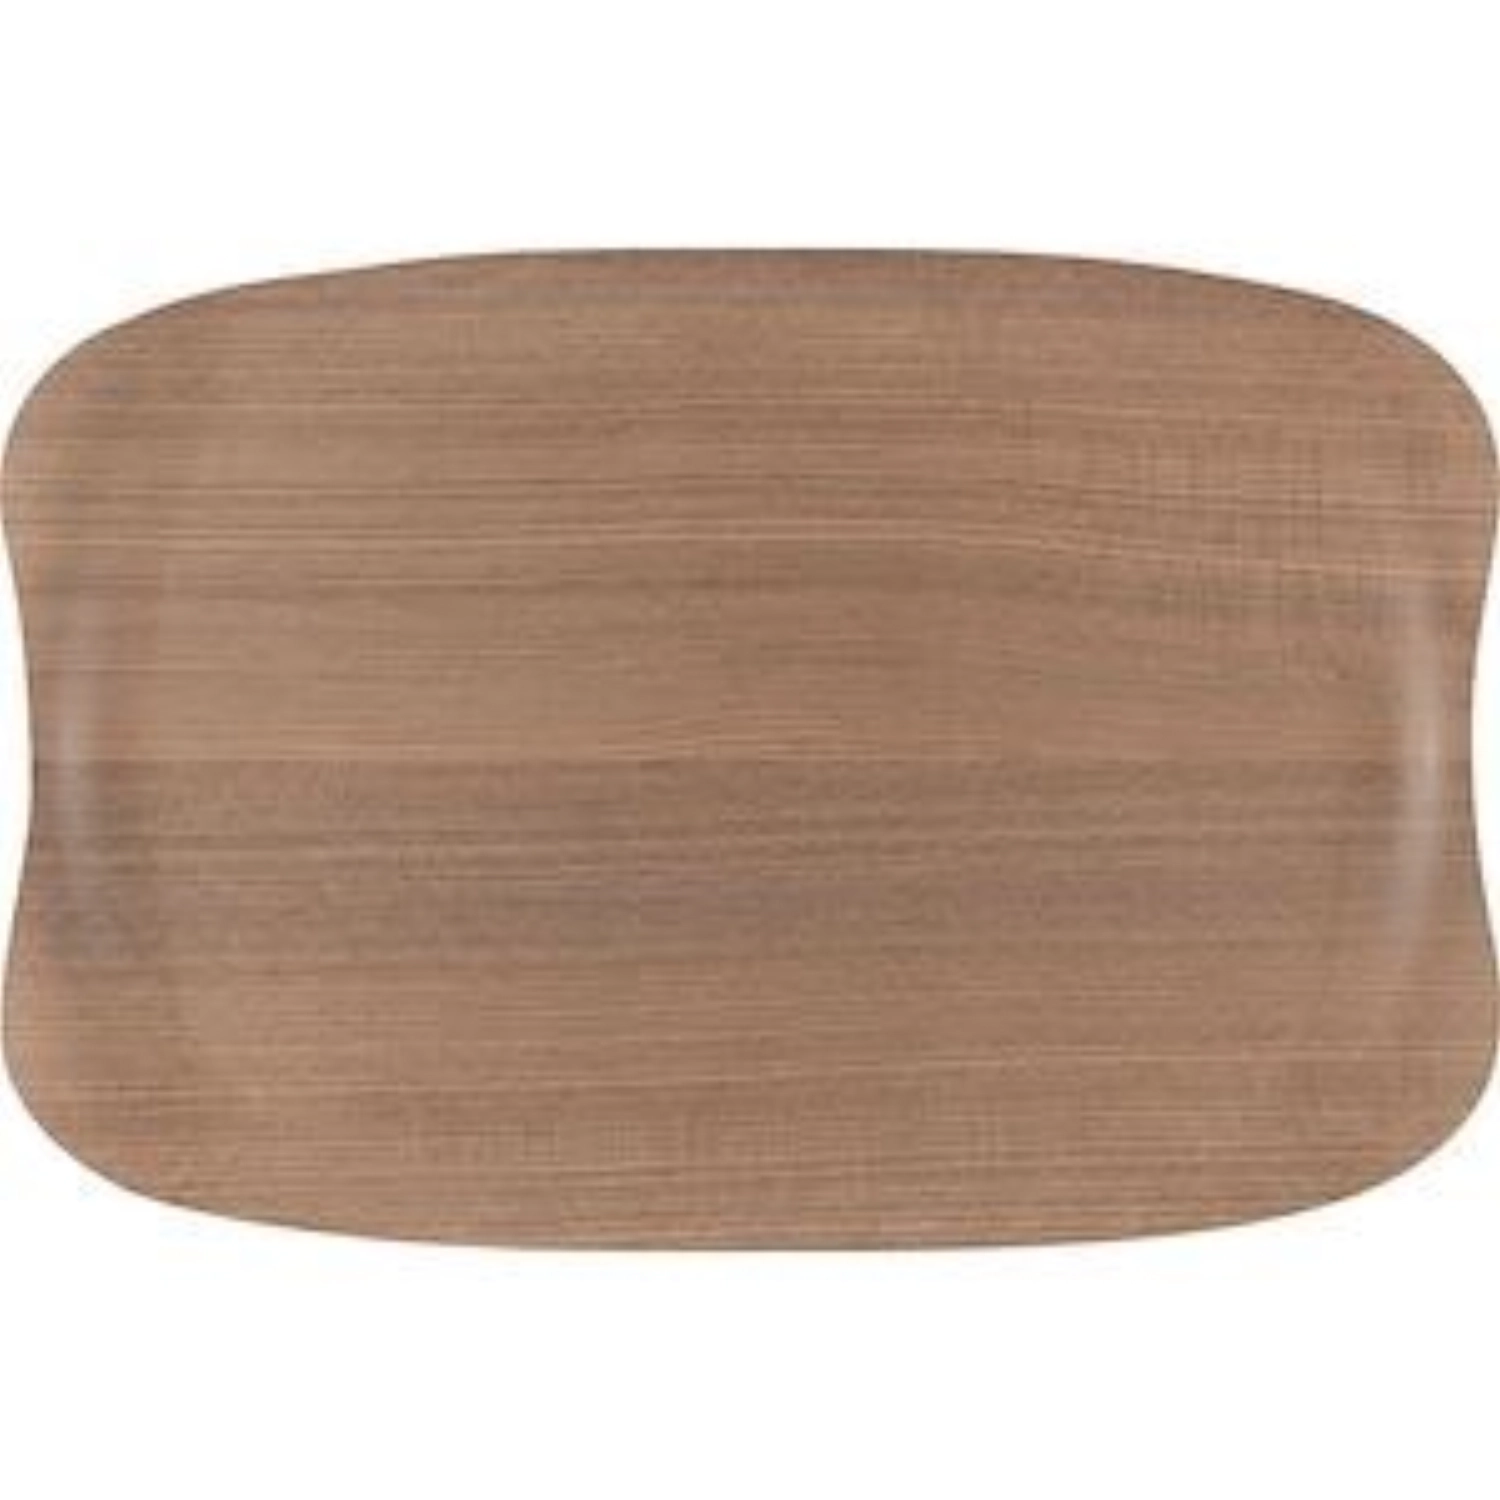 Tablett Wave Warm Wood 32x21cm